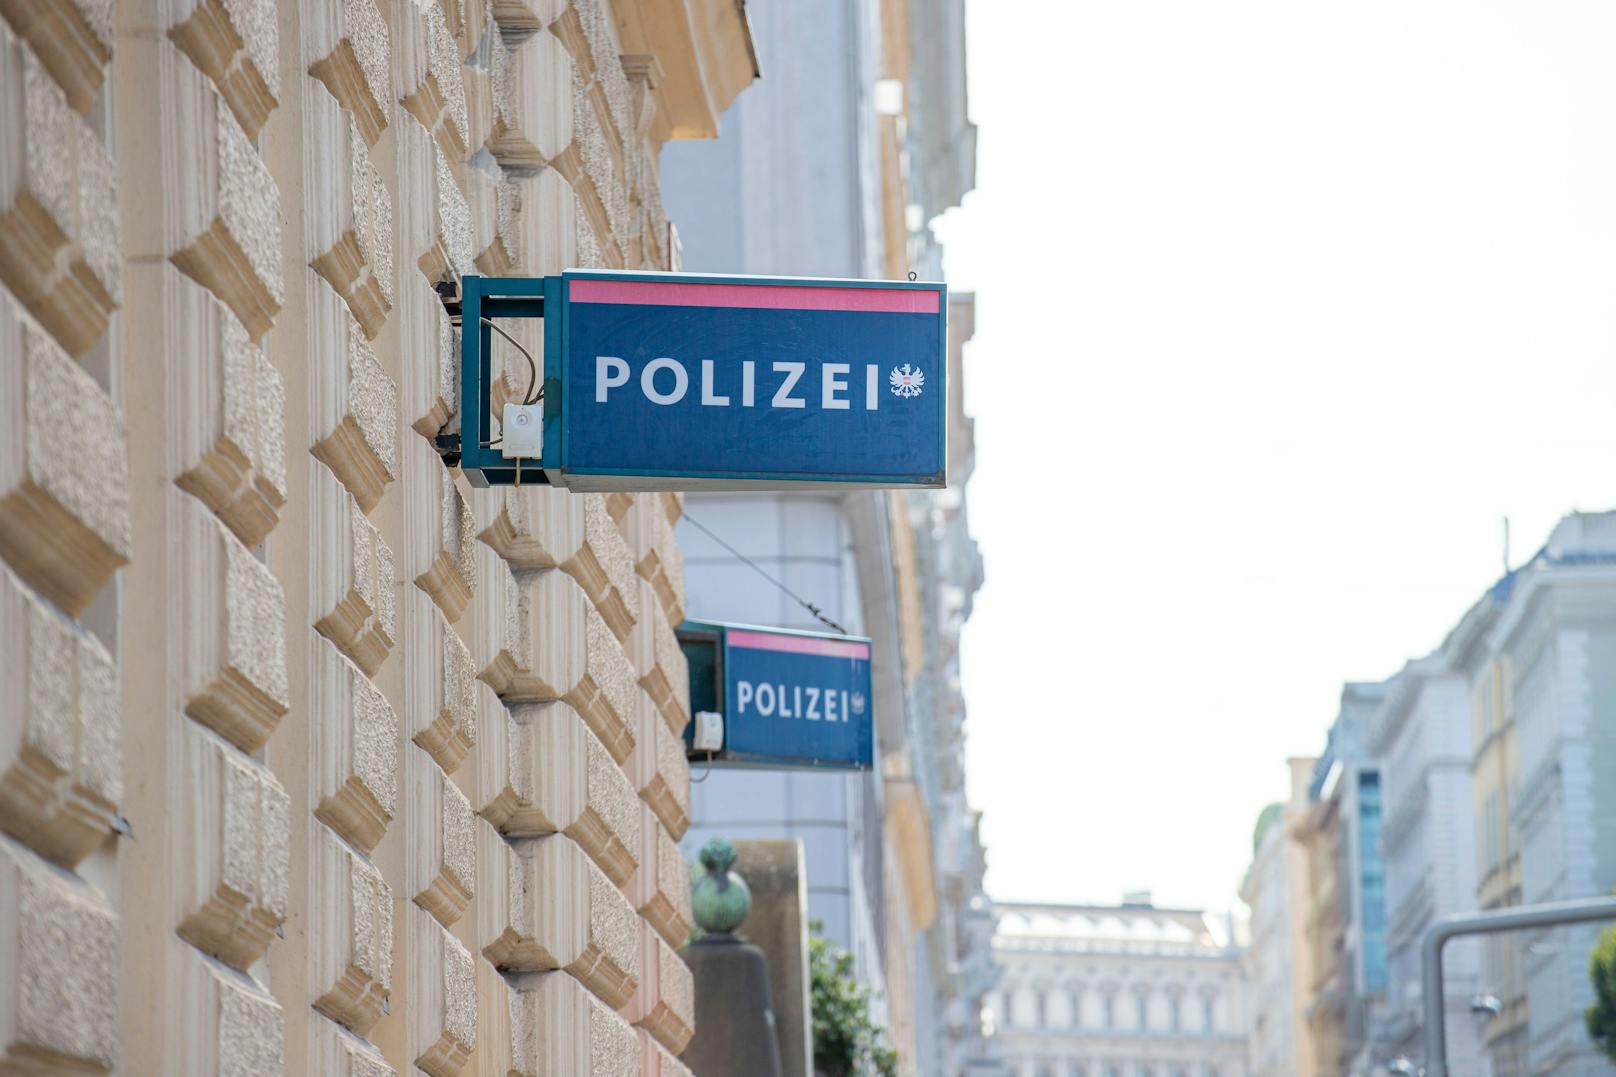 Hinweise deuten auf eine chinesische "Polizeistation" in Wien.